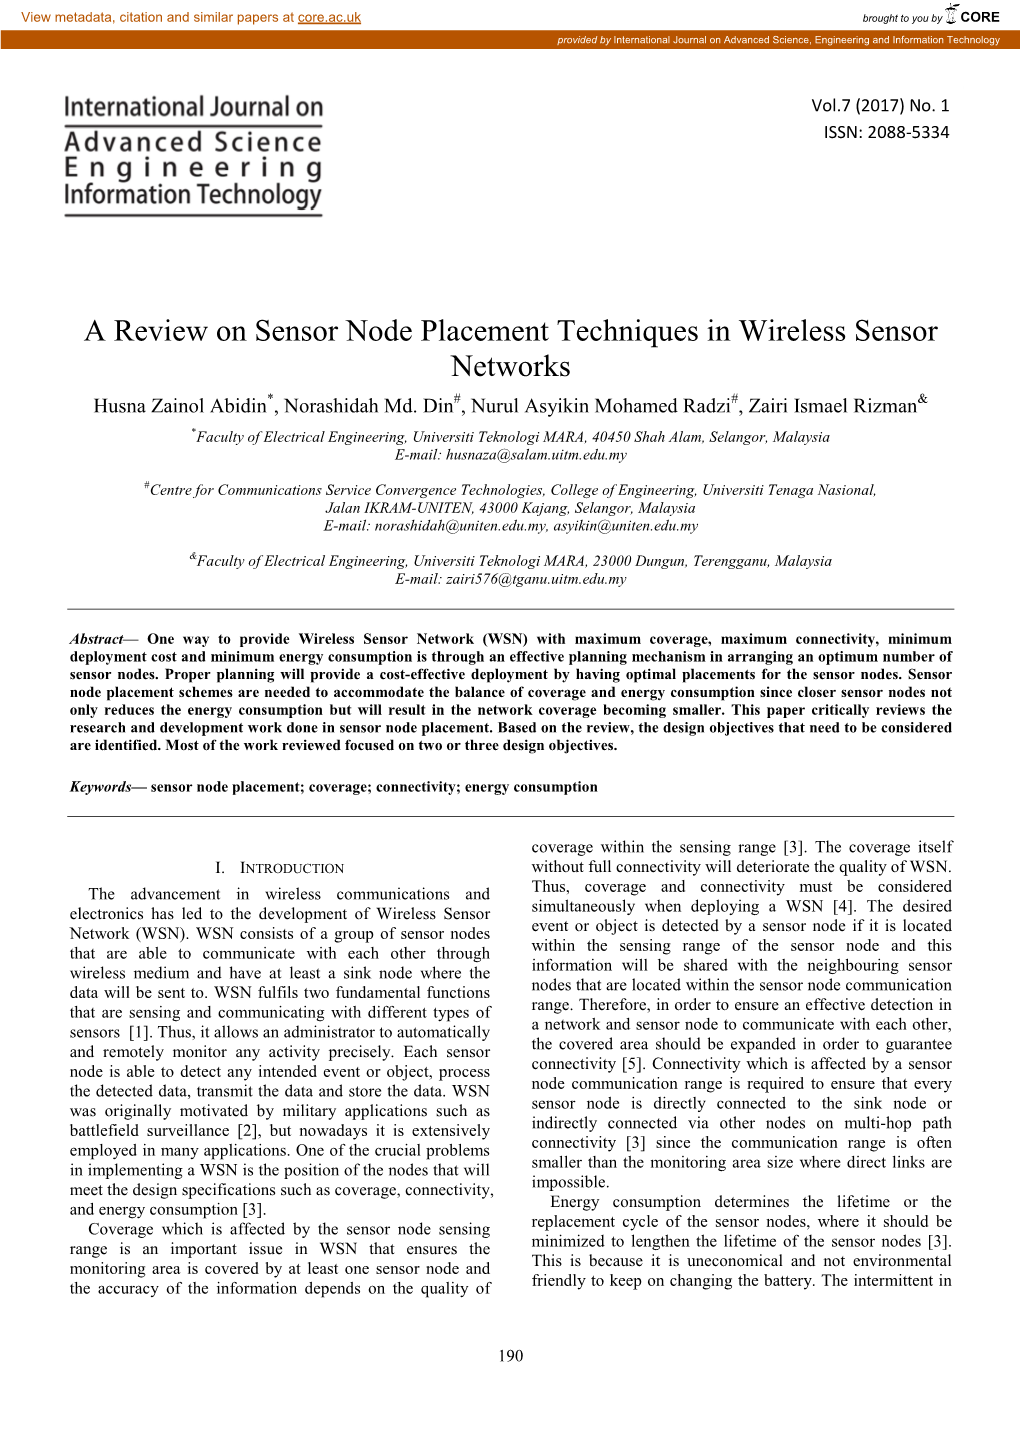 A Review on Sensor Node Placement Techniques in Wireless Sensor Networks Husna Zainol Abidin*, Norashidah Md